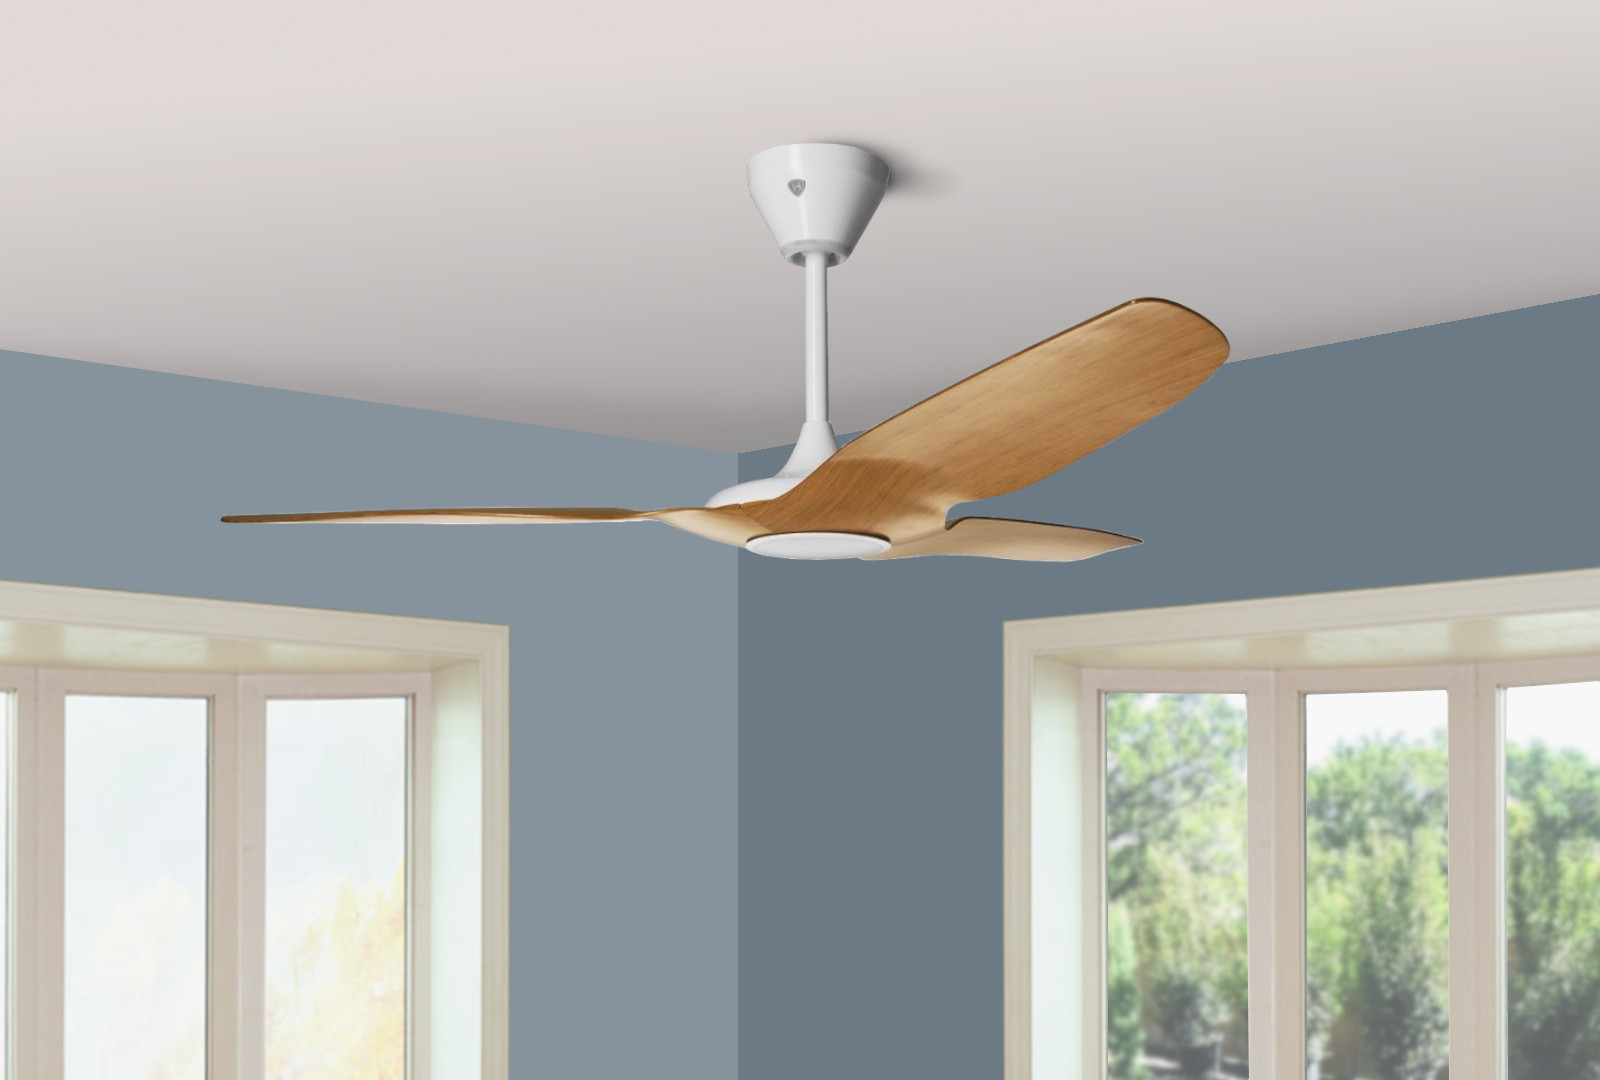 Smart ceiling fans